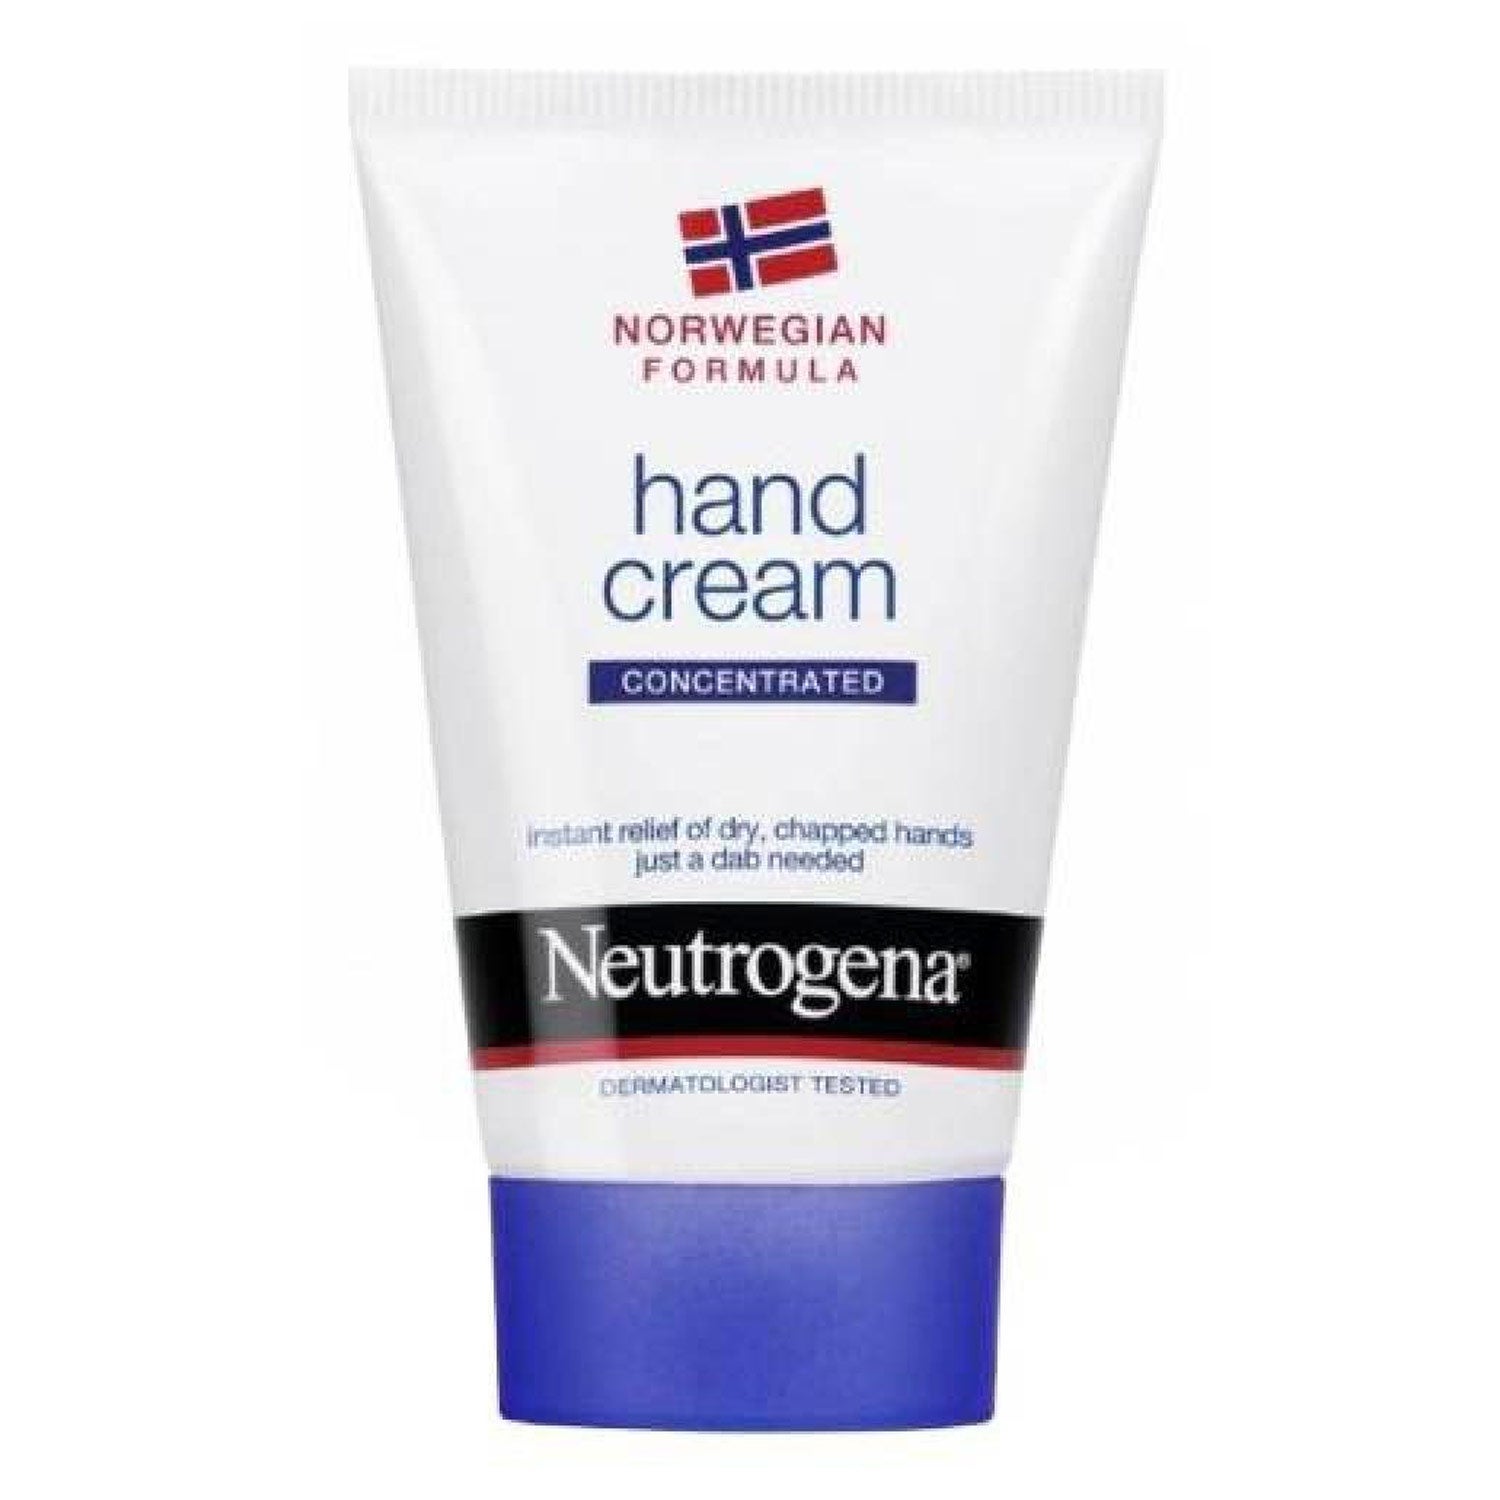 Neutrogena hand cream.